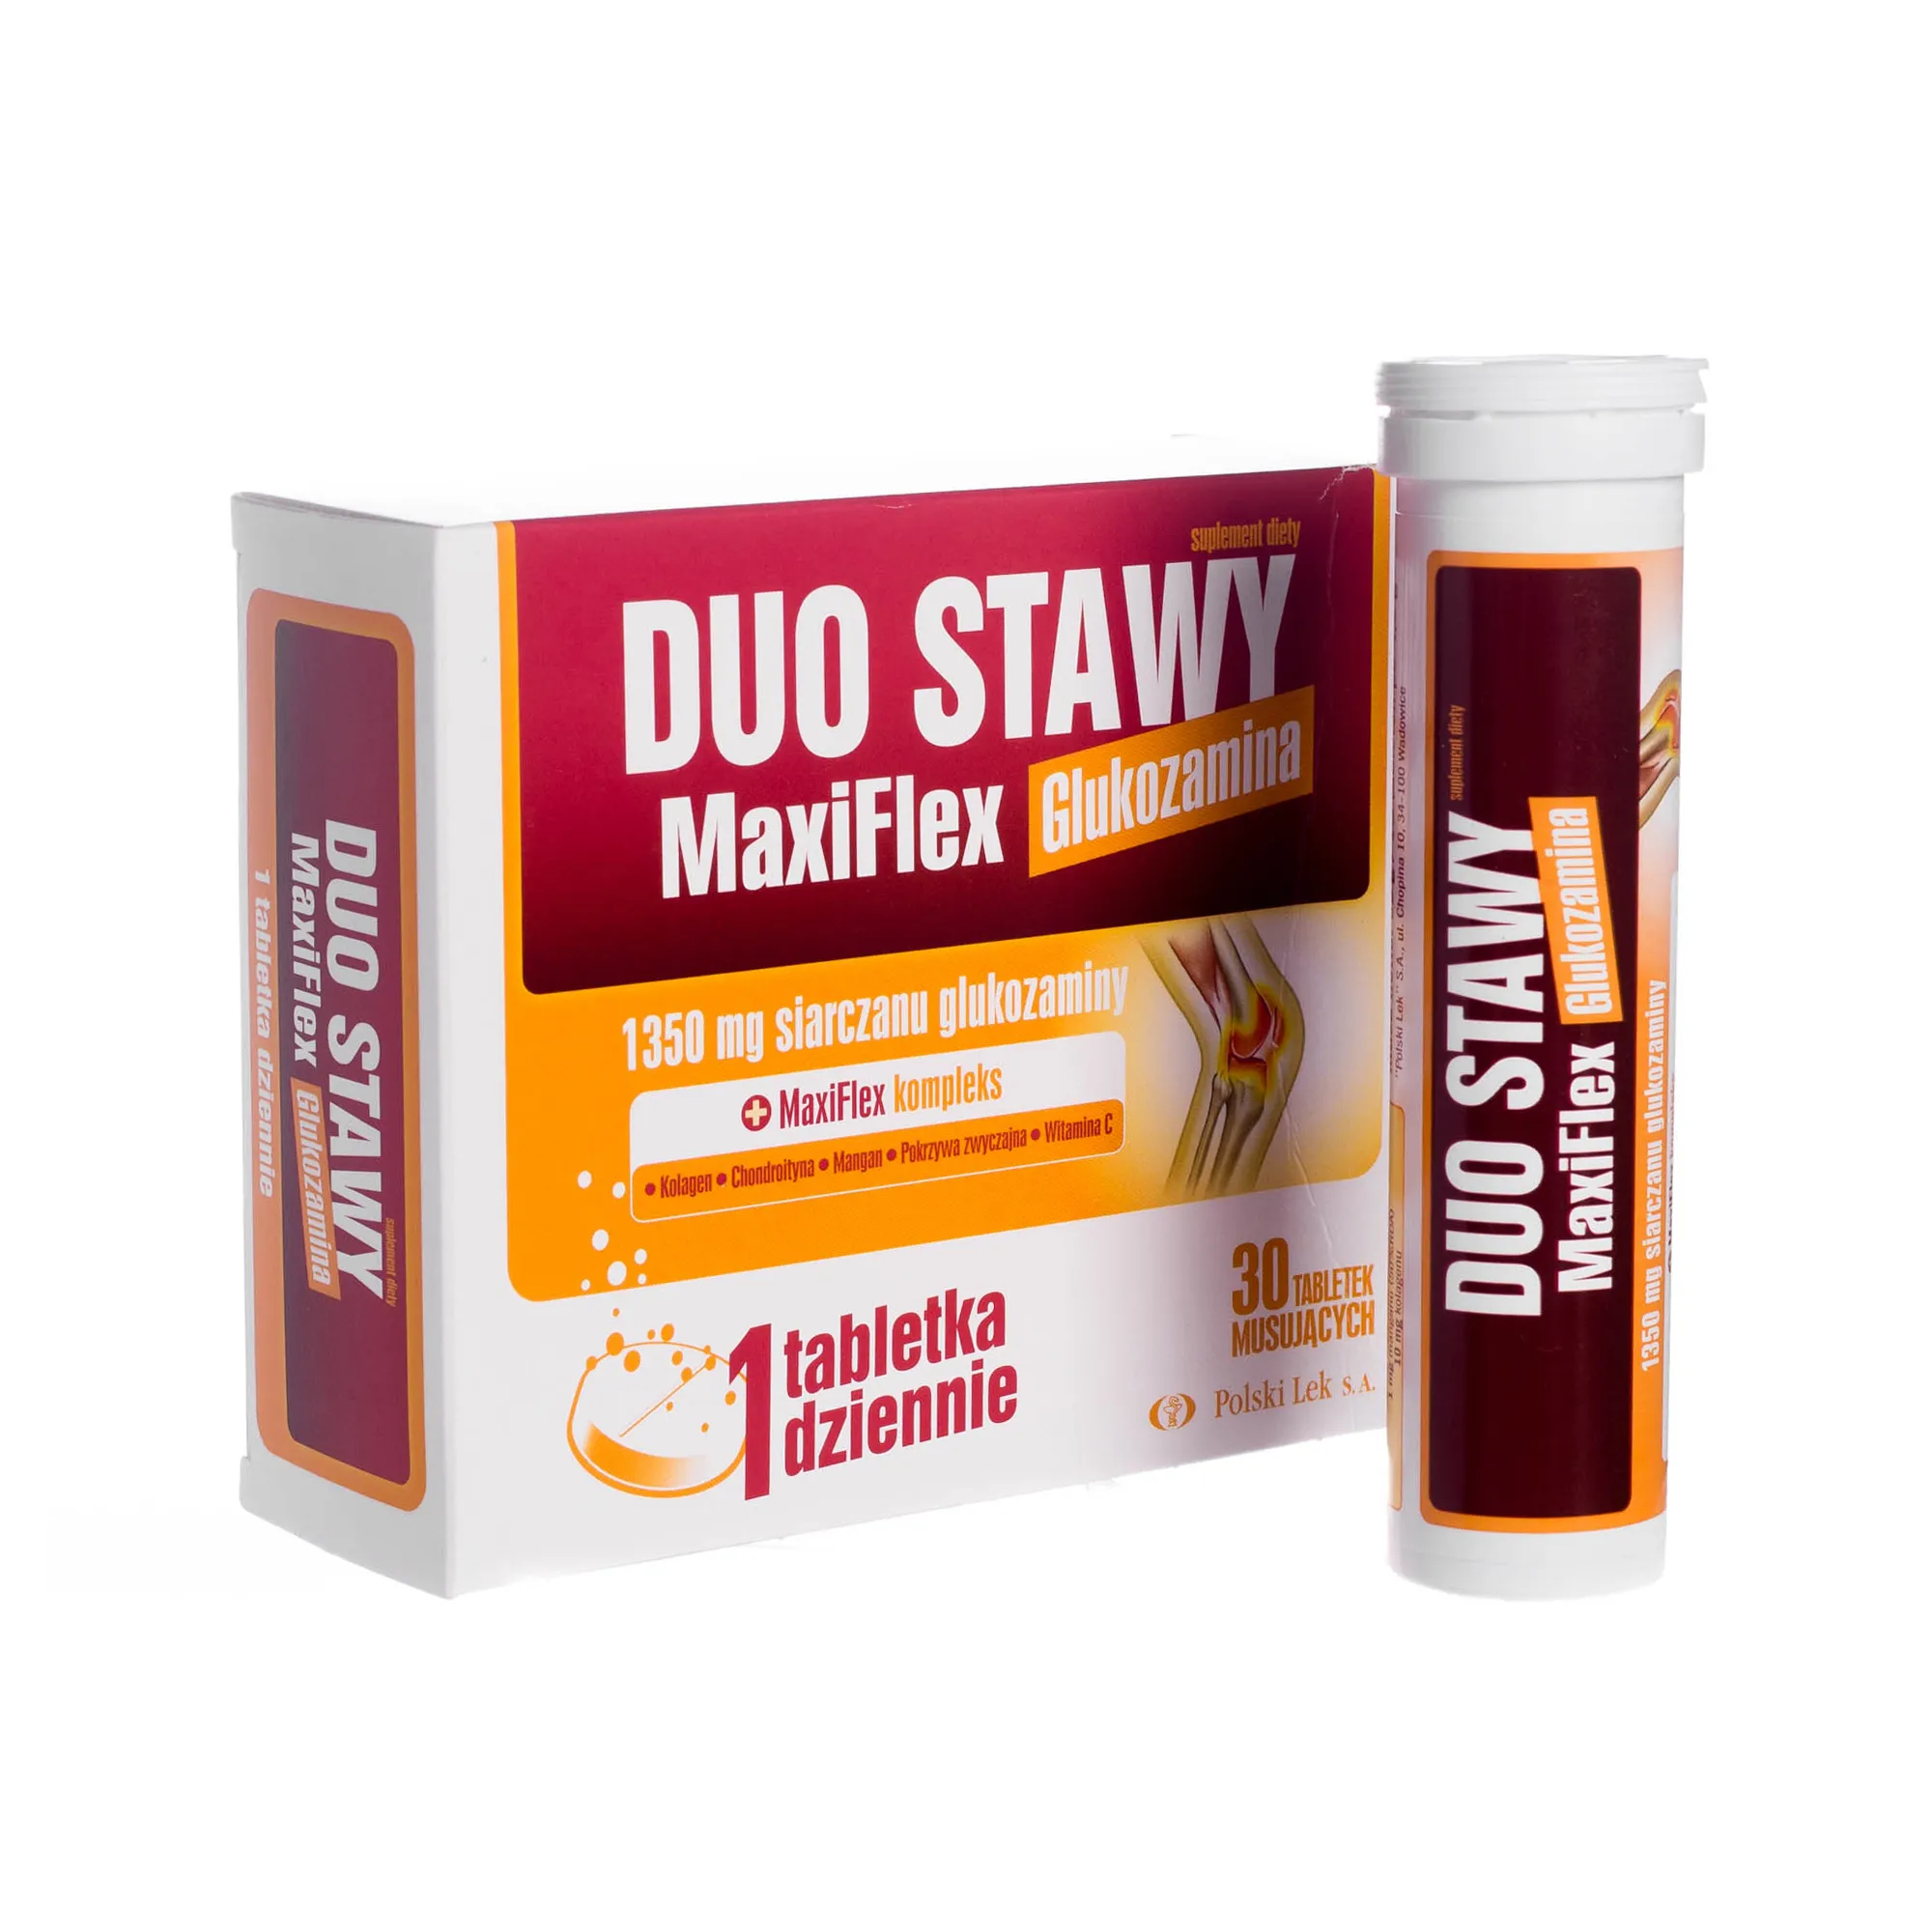 Duo Stawy MaxiFlex glukozamina, 1350 mg siarczanu glukozaminy, 30 tabletek musujących 